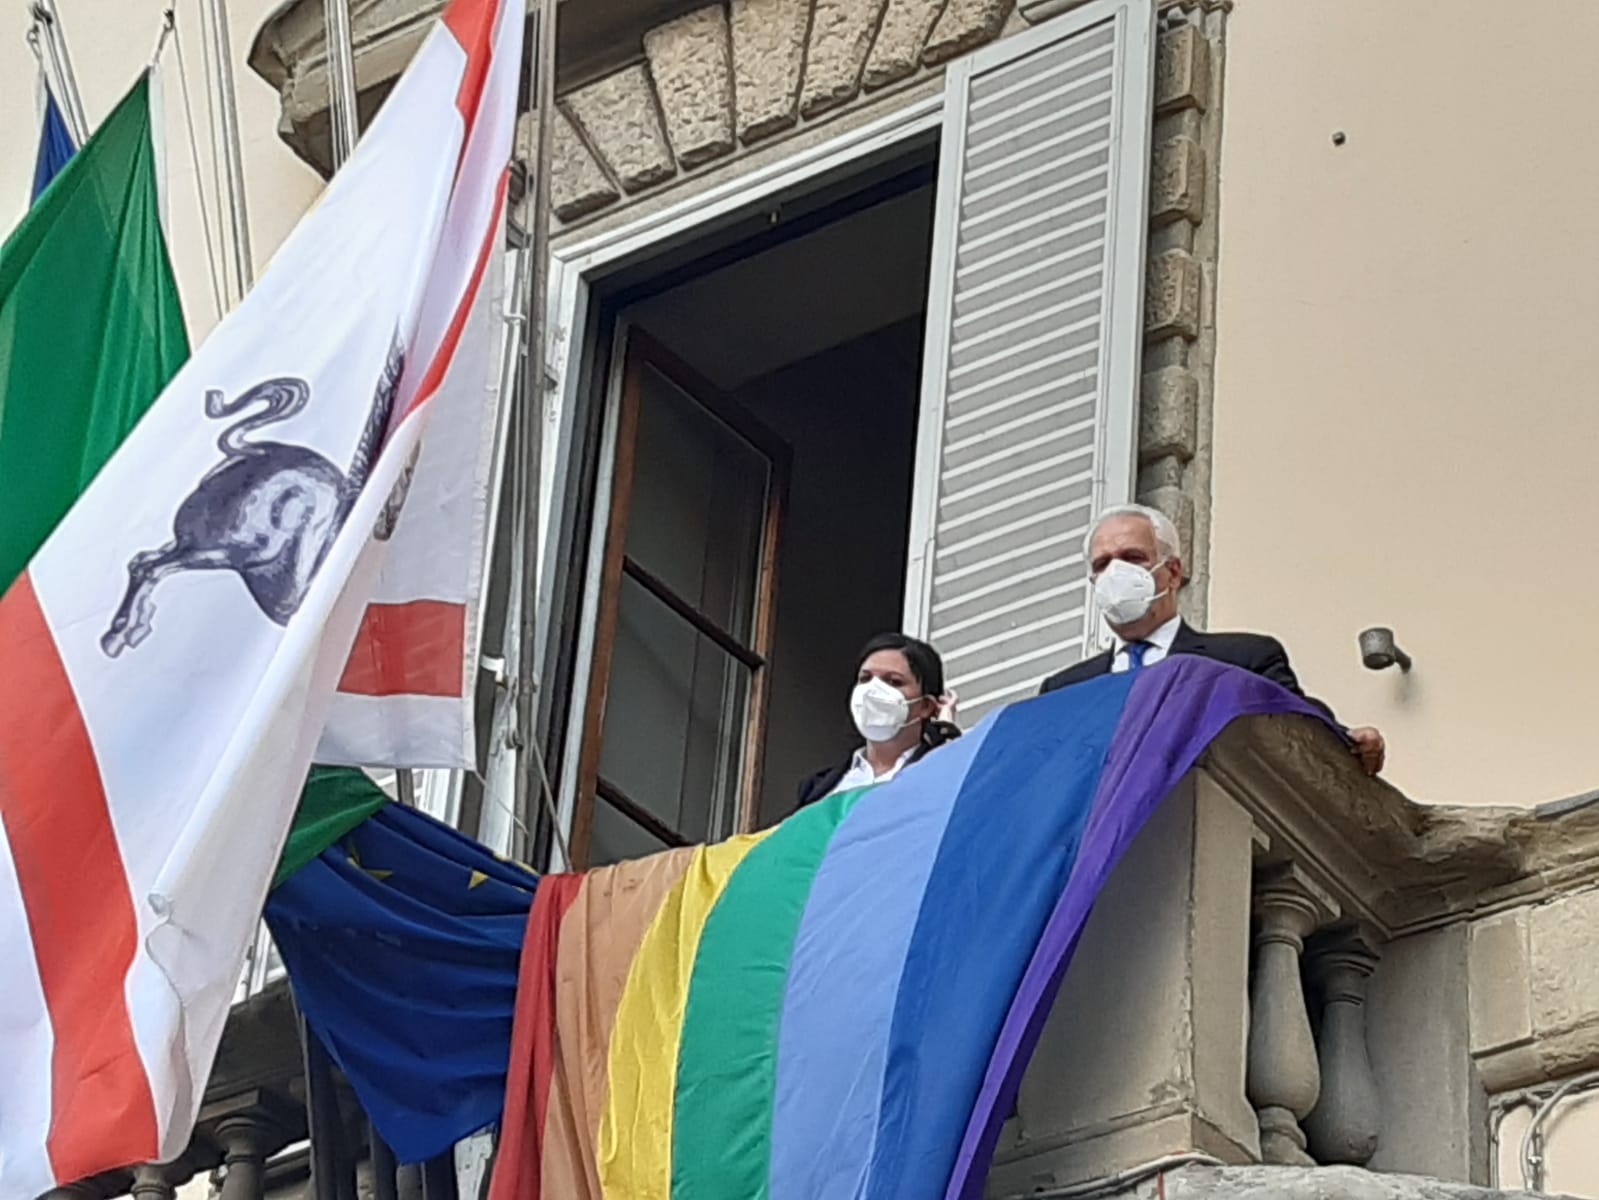 Giornata contro omofobia, la bandiera arcobaleno a Palazzo Strozzi Sacrati 